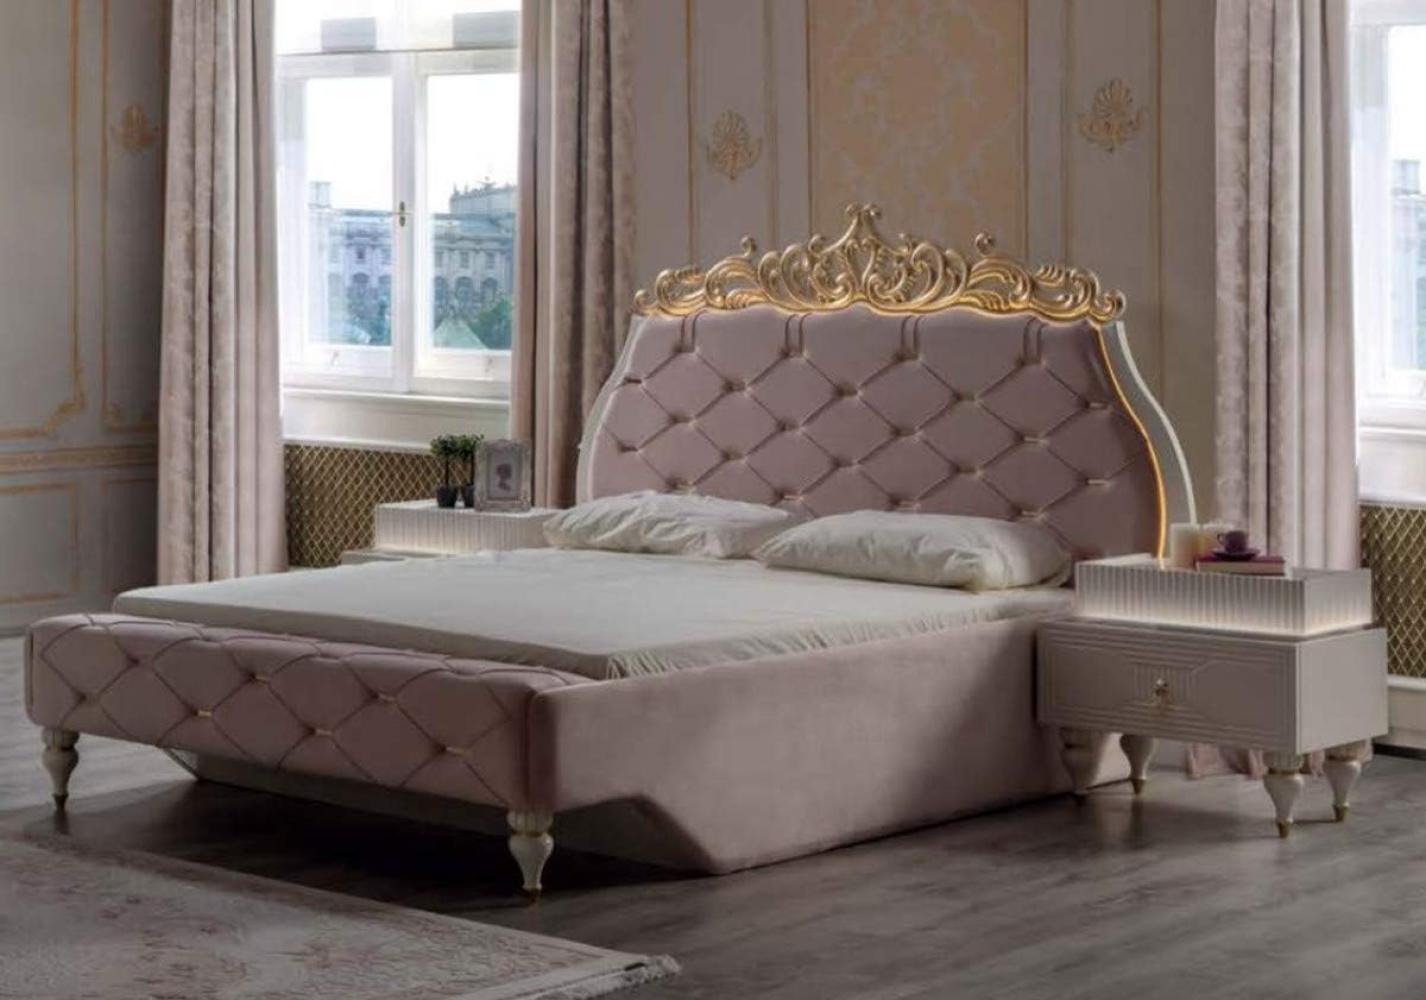 Casa Padrino Luxus Barock Doppelbett Rosa / Creme / Gold 204 x 233 x H. 149 cm - Edles Massivholz Bett mit Kopfteil - Prunkvolle Schlafzimmer Möbel im Barockstil Bild 1